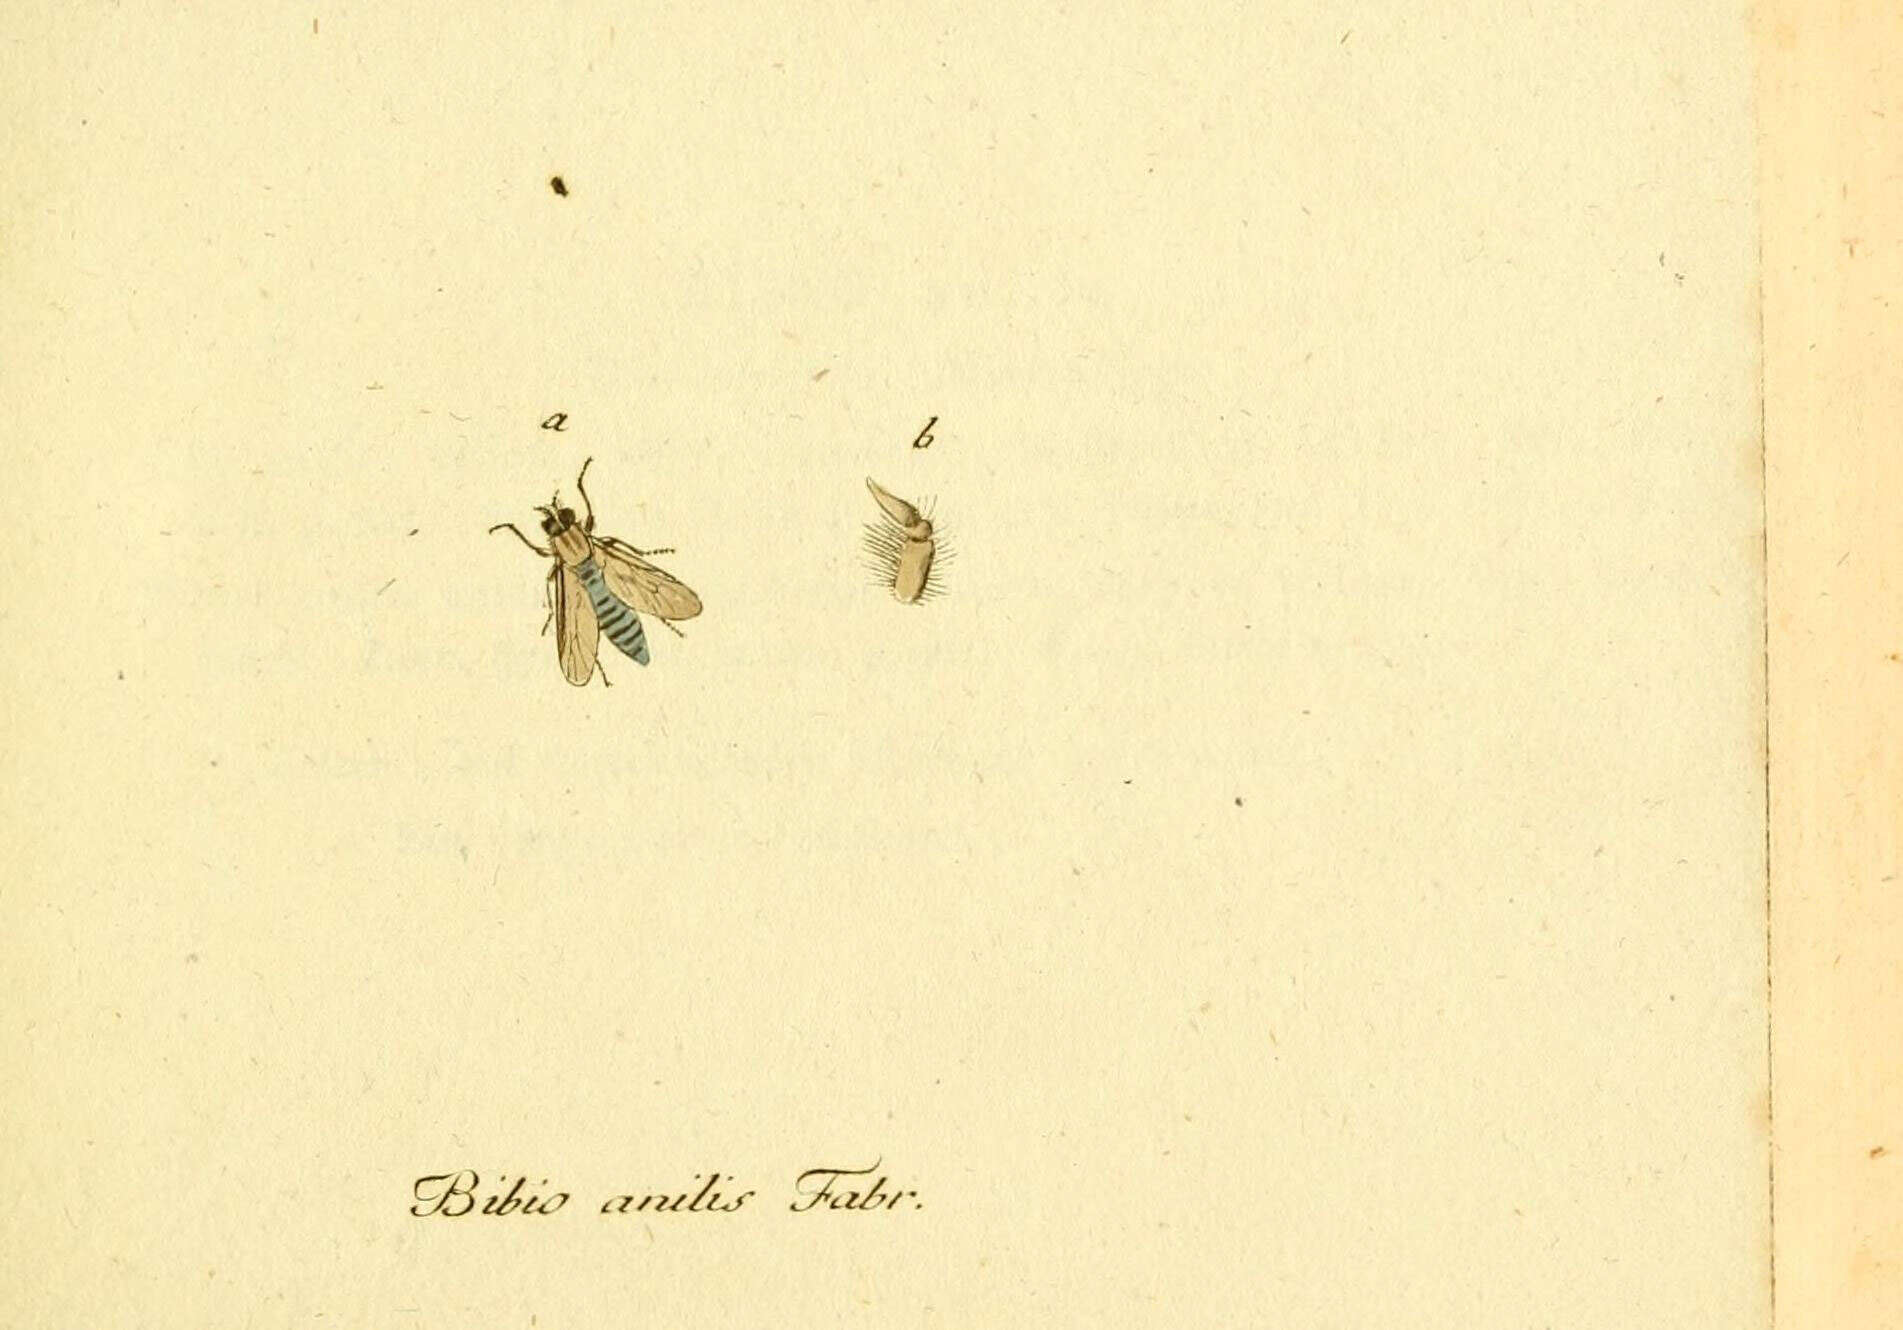 Image of Acrosathe annulata (Fabricius 1805)